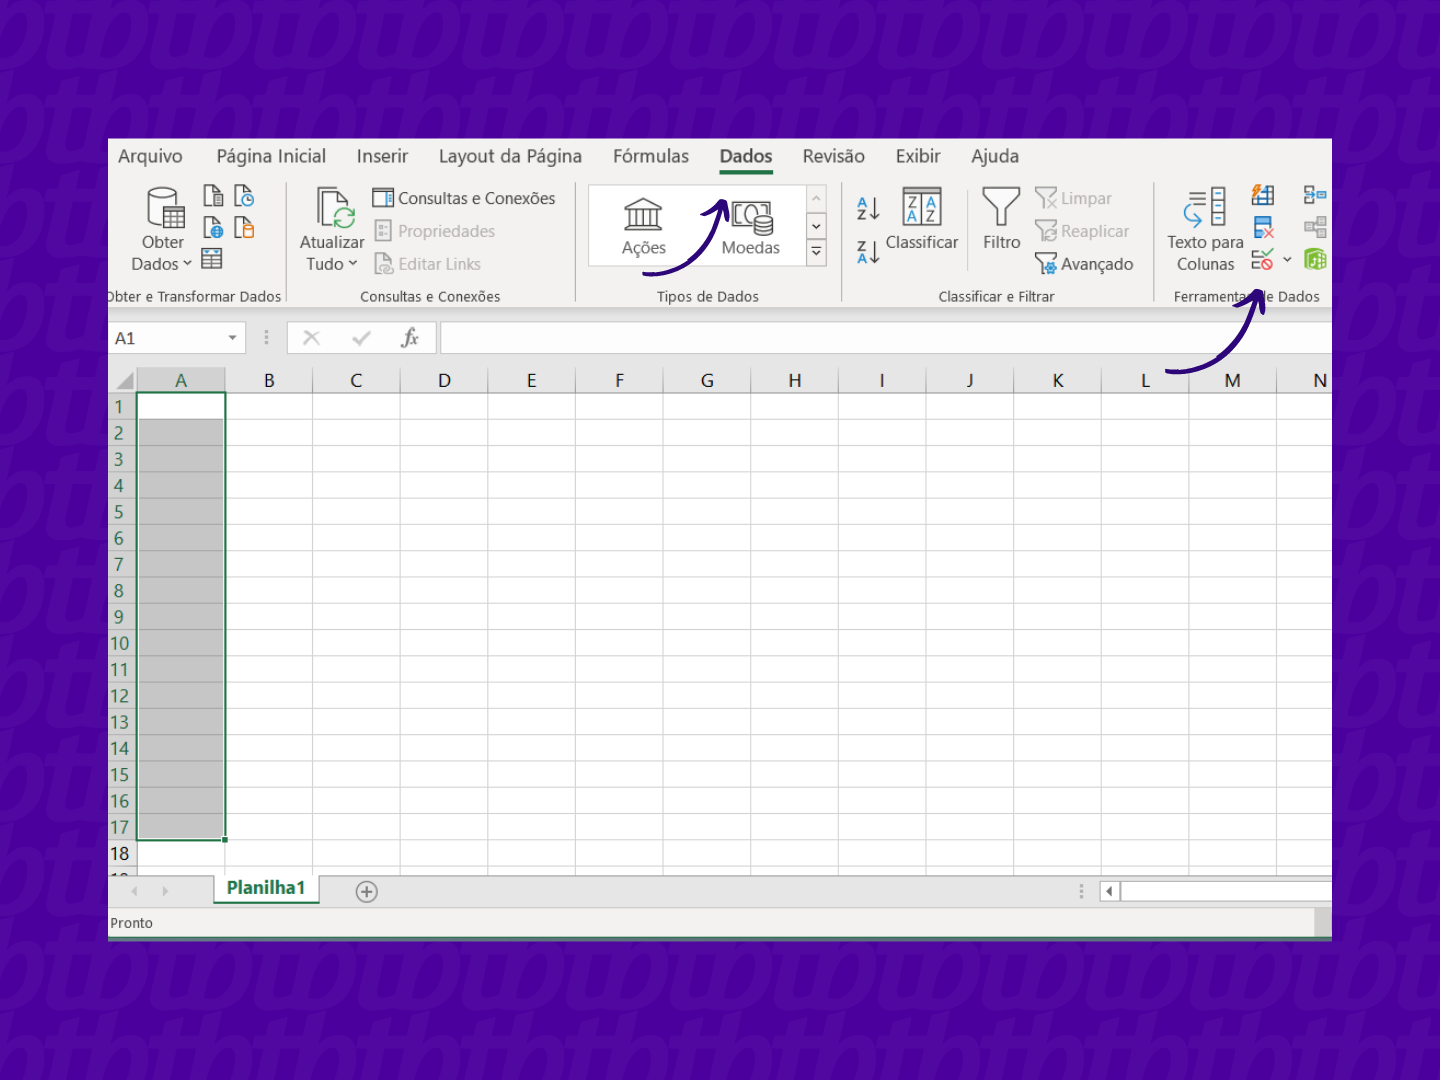 Caminho para acessar "Validação de dados" no Excel